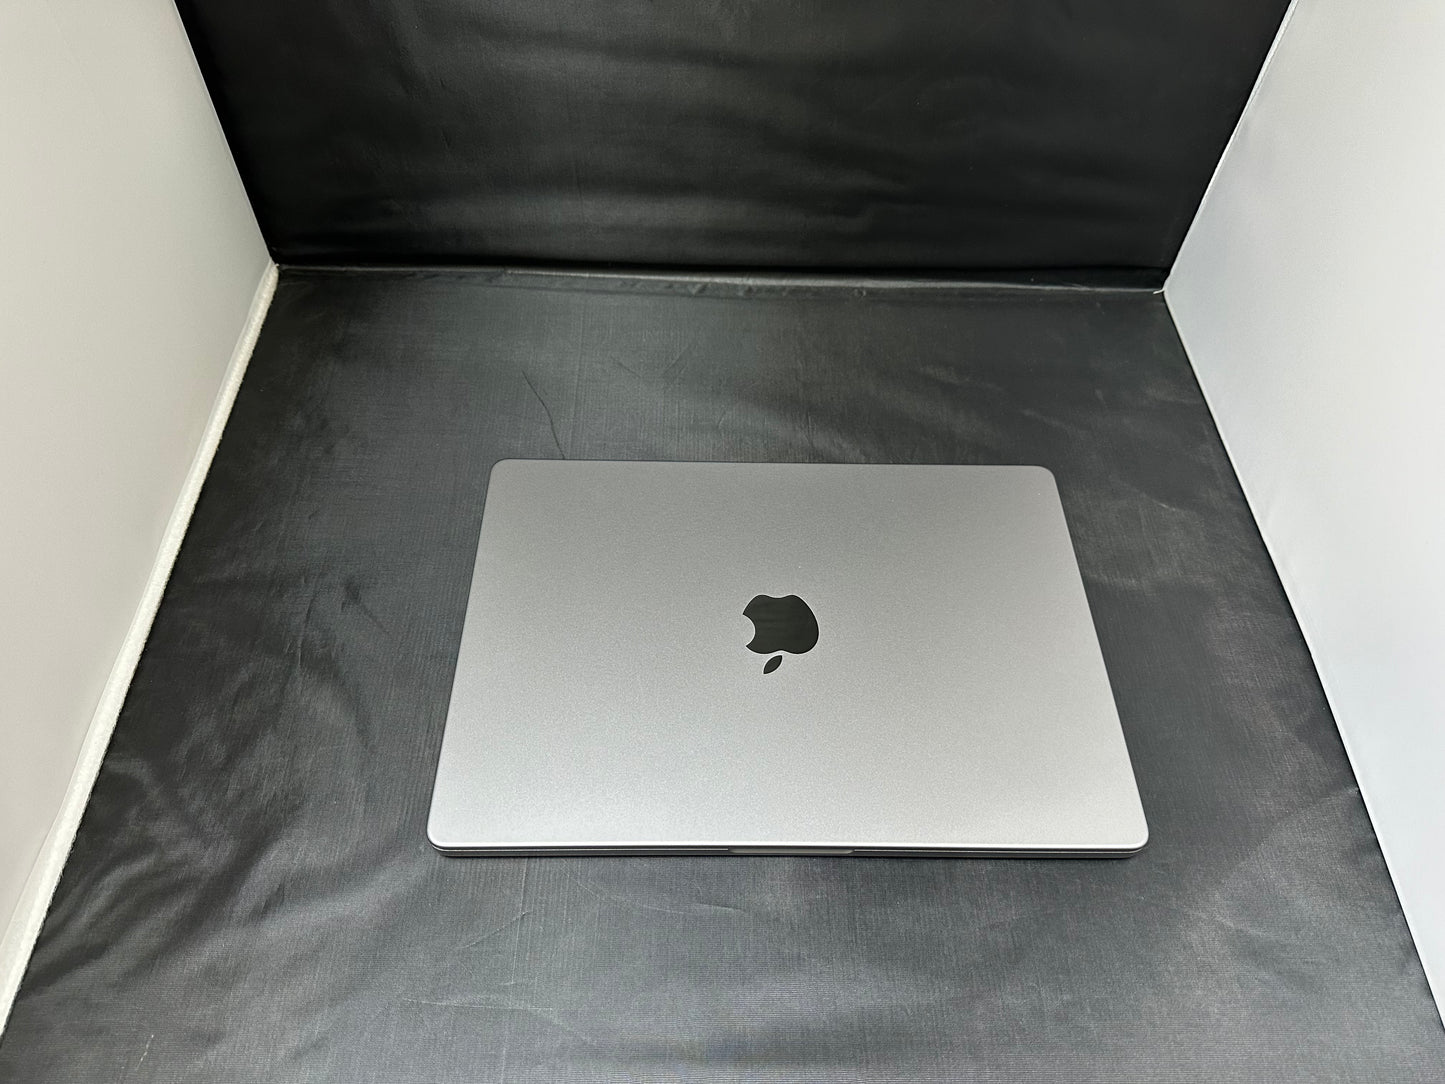 MacBook Pro M1 16gb ram 512gb ssd +512gb external ssd